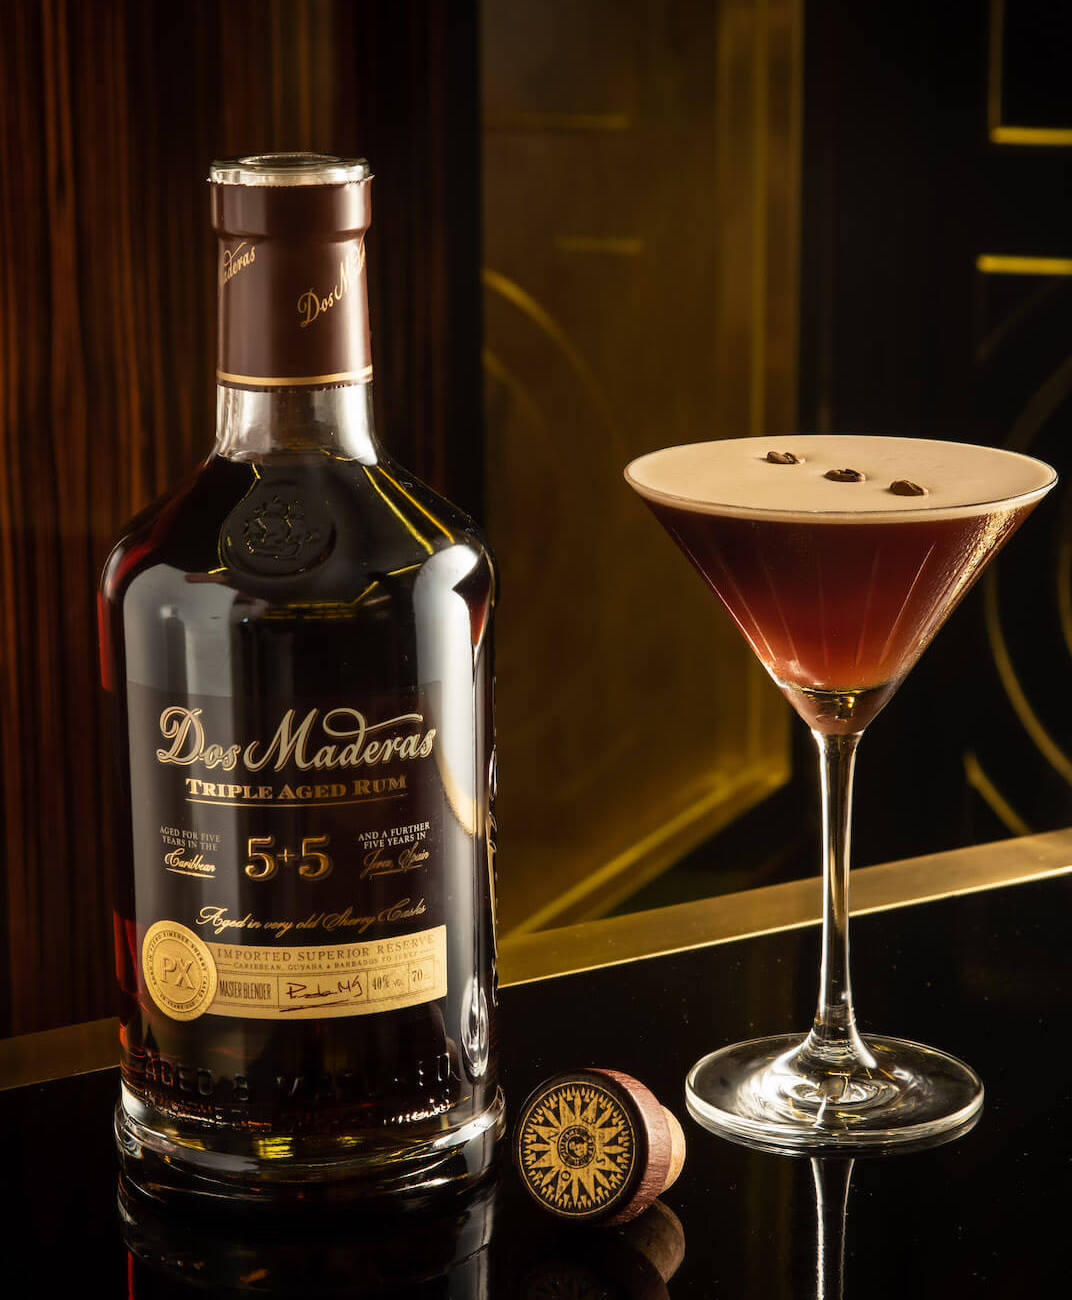 Dos-Maderas-Cocktail-Espersso-Martini - Einfaches Portfolio an dunklen Rum-Cocktails